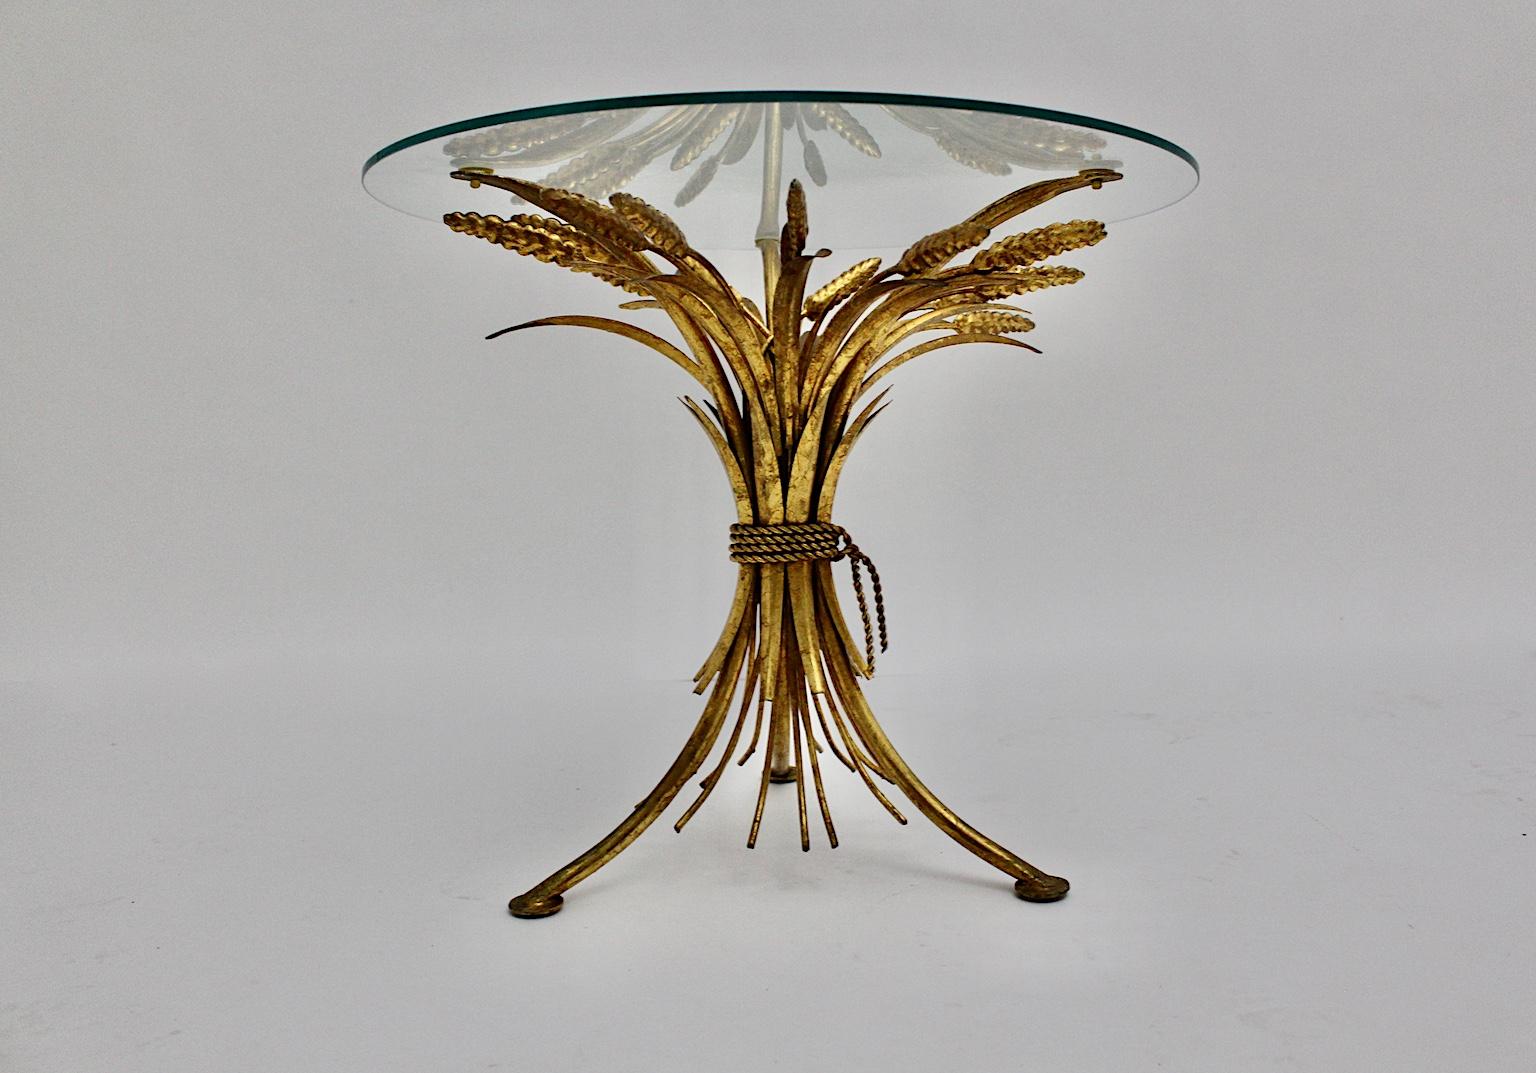 Table basse ou table d'appoint vintage dorée de style Hollywood regency conçue et réalisée en France dans les années 1970.
Inspiré par la Nature, le designer de la petite table basse étonnante et dorée a créé une base en acier doré en forme de gerbe